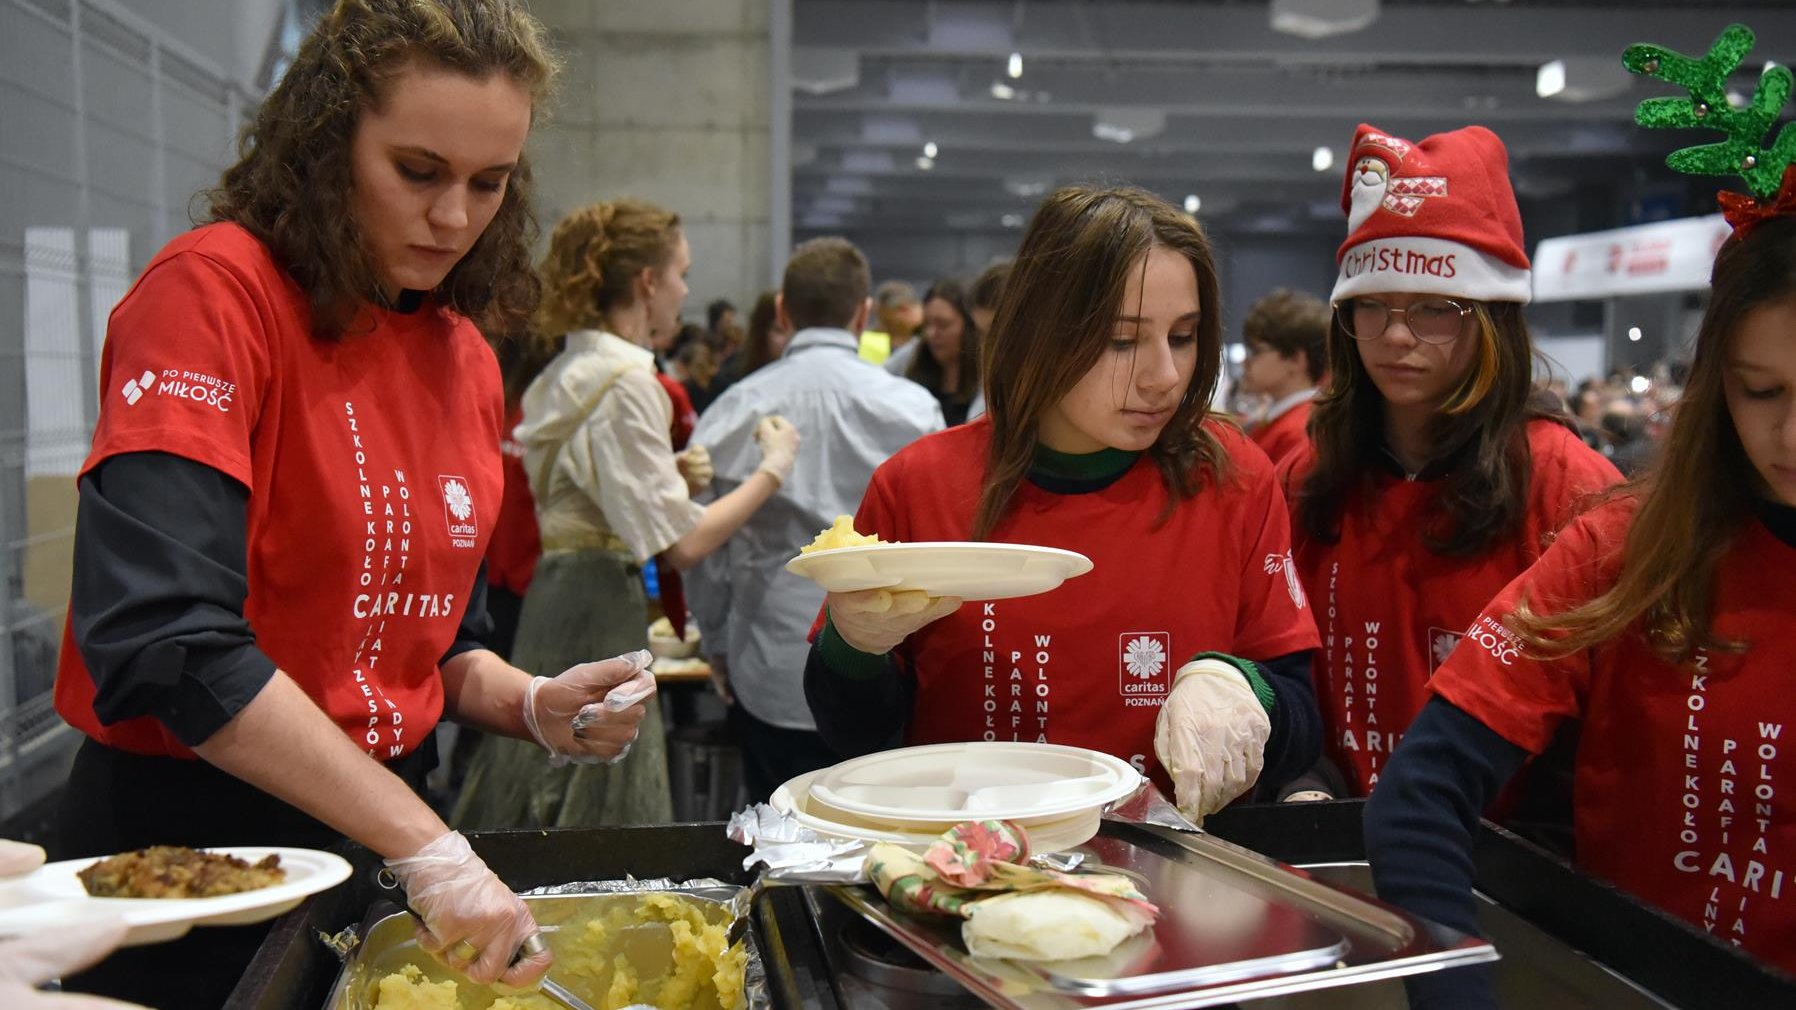 Na zdjęciu kobiety w koszulkach Caritas nakładają jedzenie na talerze